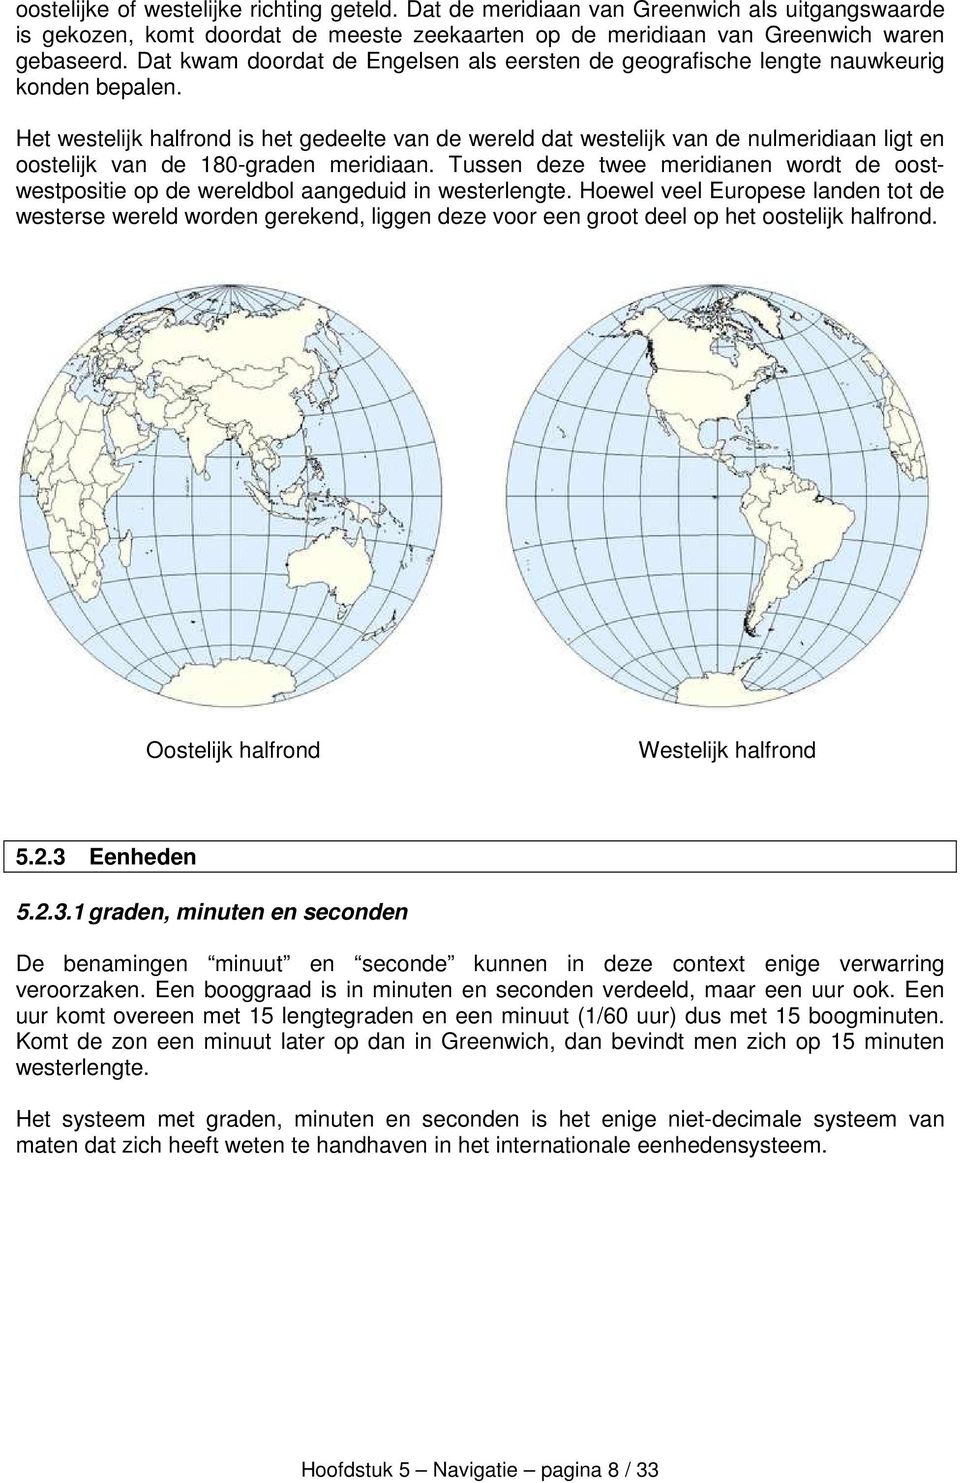 Het westelijk halfrond is het gedeelte van de wereld dat westelijk van de nulmeridiaan ligt en oostelijk van de 180-graden meridiaan.